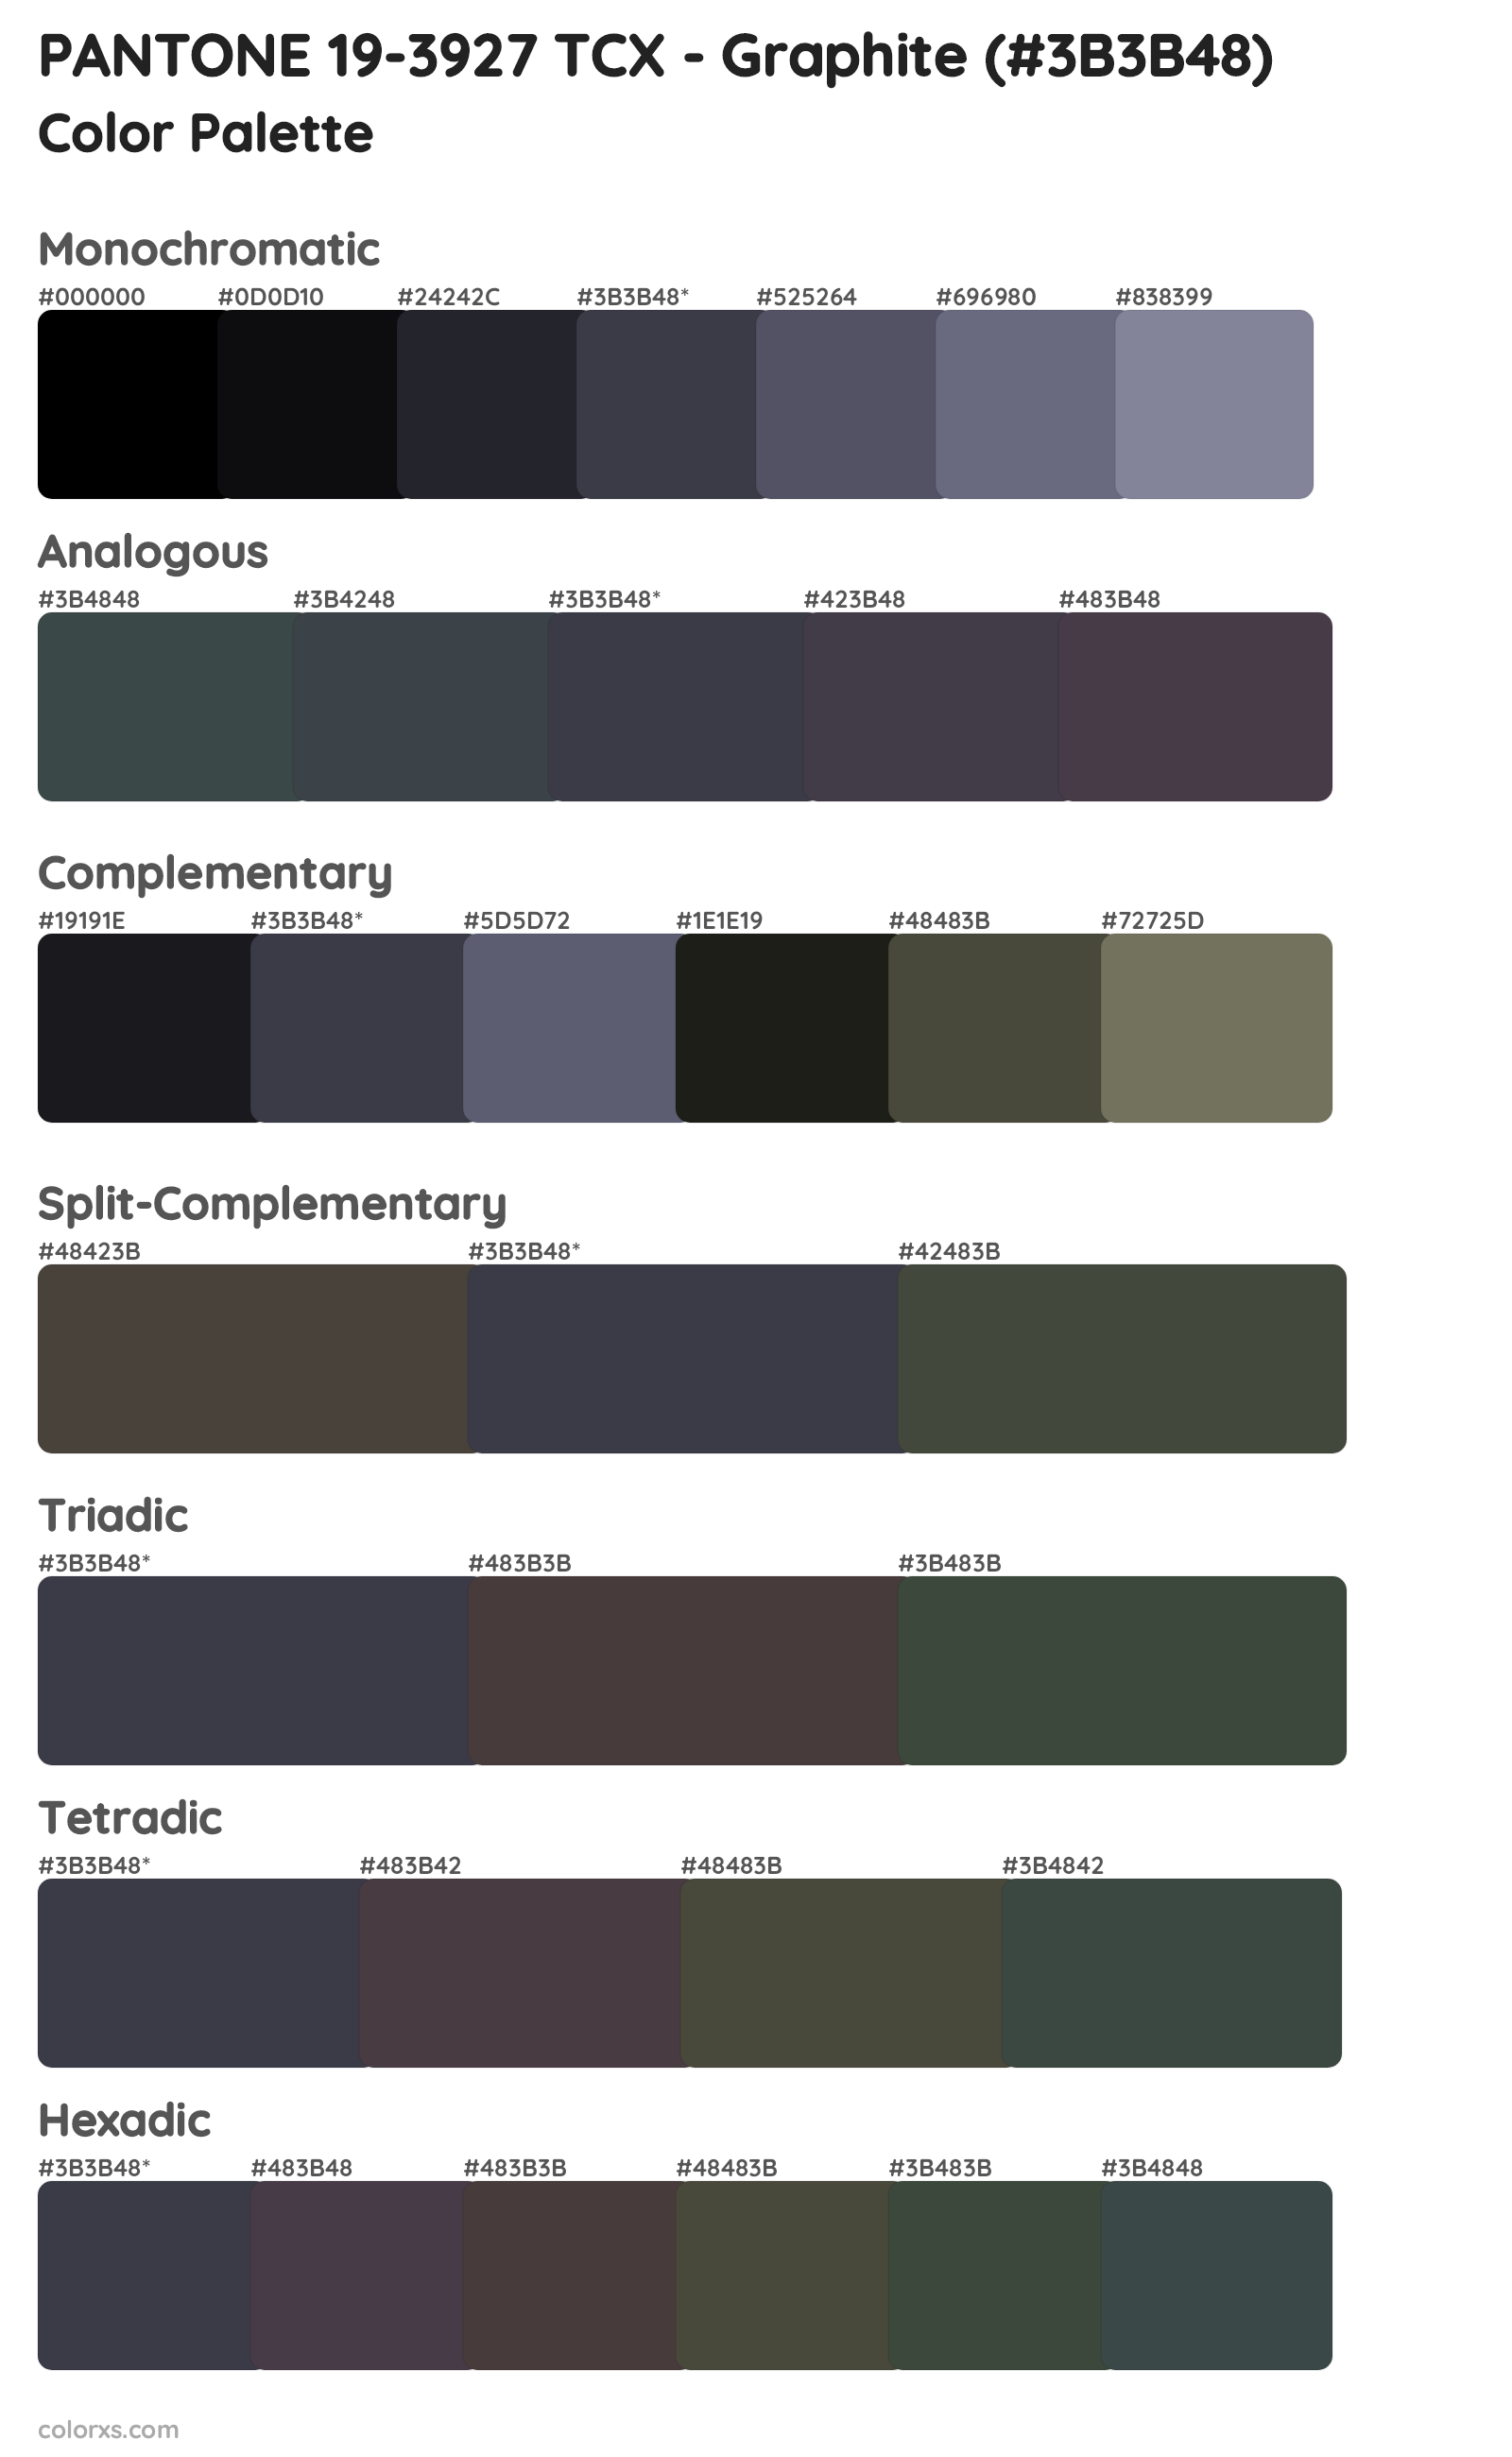 PANTONE 19-3927 TCX - Graphite Color Scheme Palettes